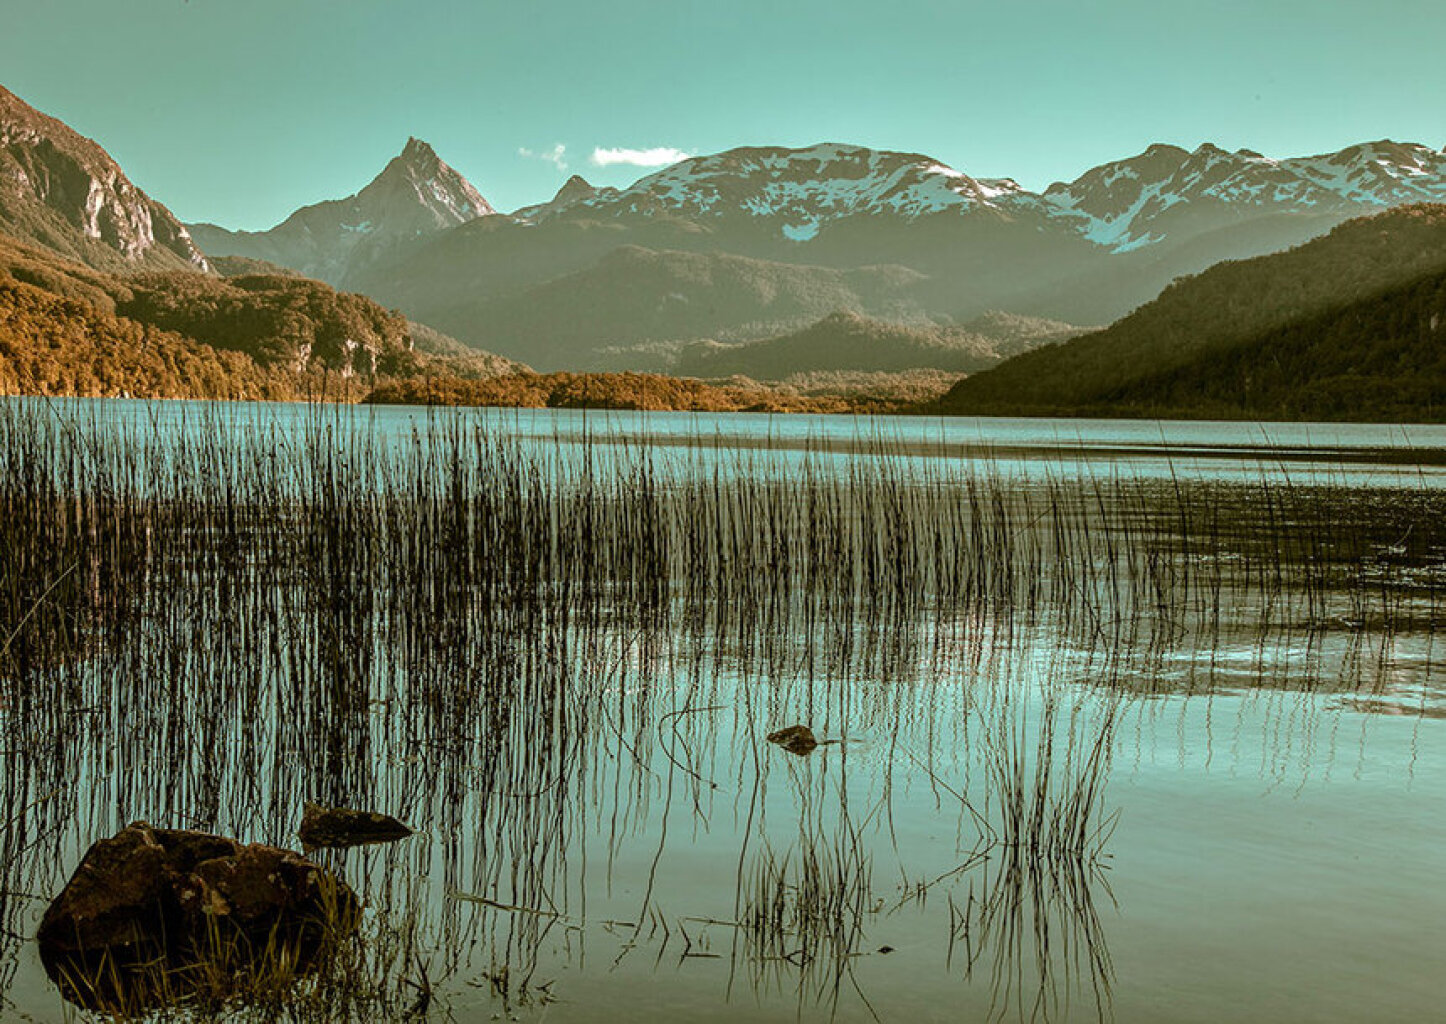 Quadro Patagonia Chilena 1 por Patricia Schussel Gomes -  CATEGORIAS